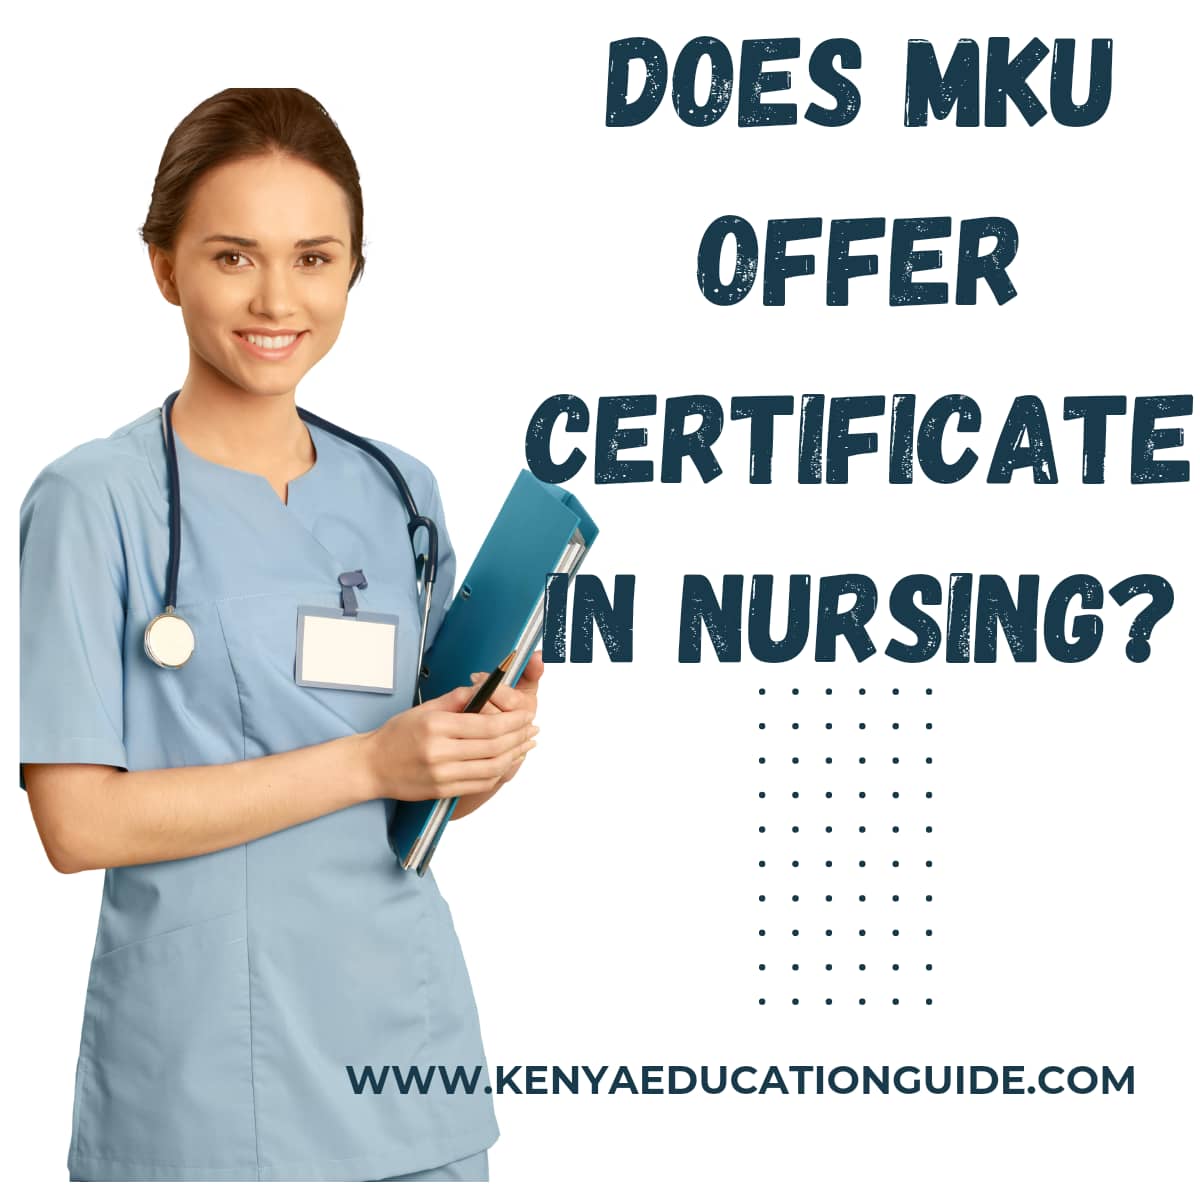 Does MKU offer Certificate in Nursing?